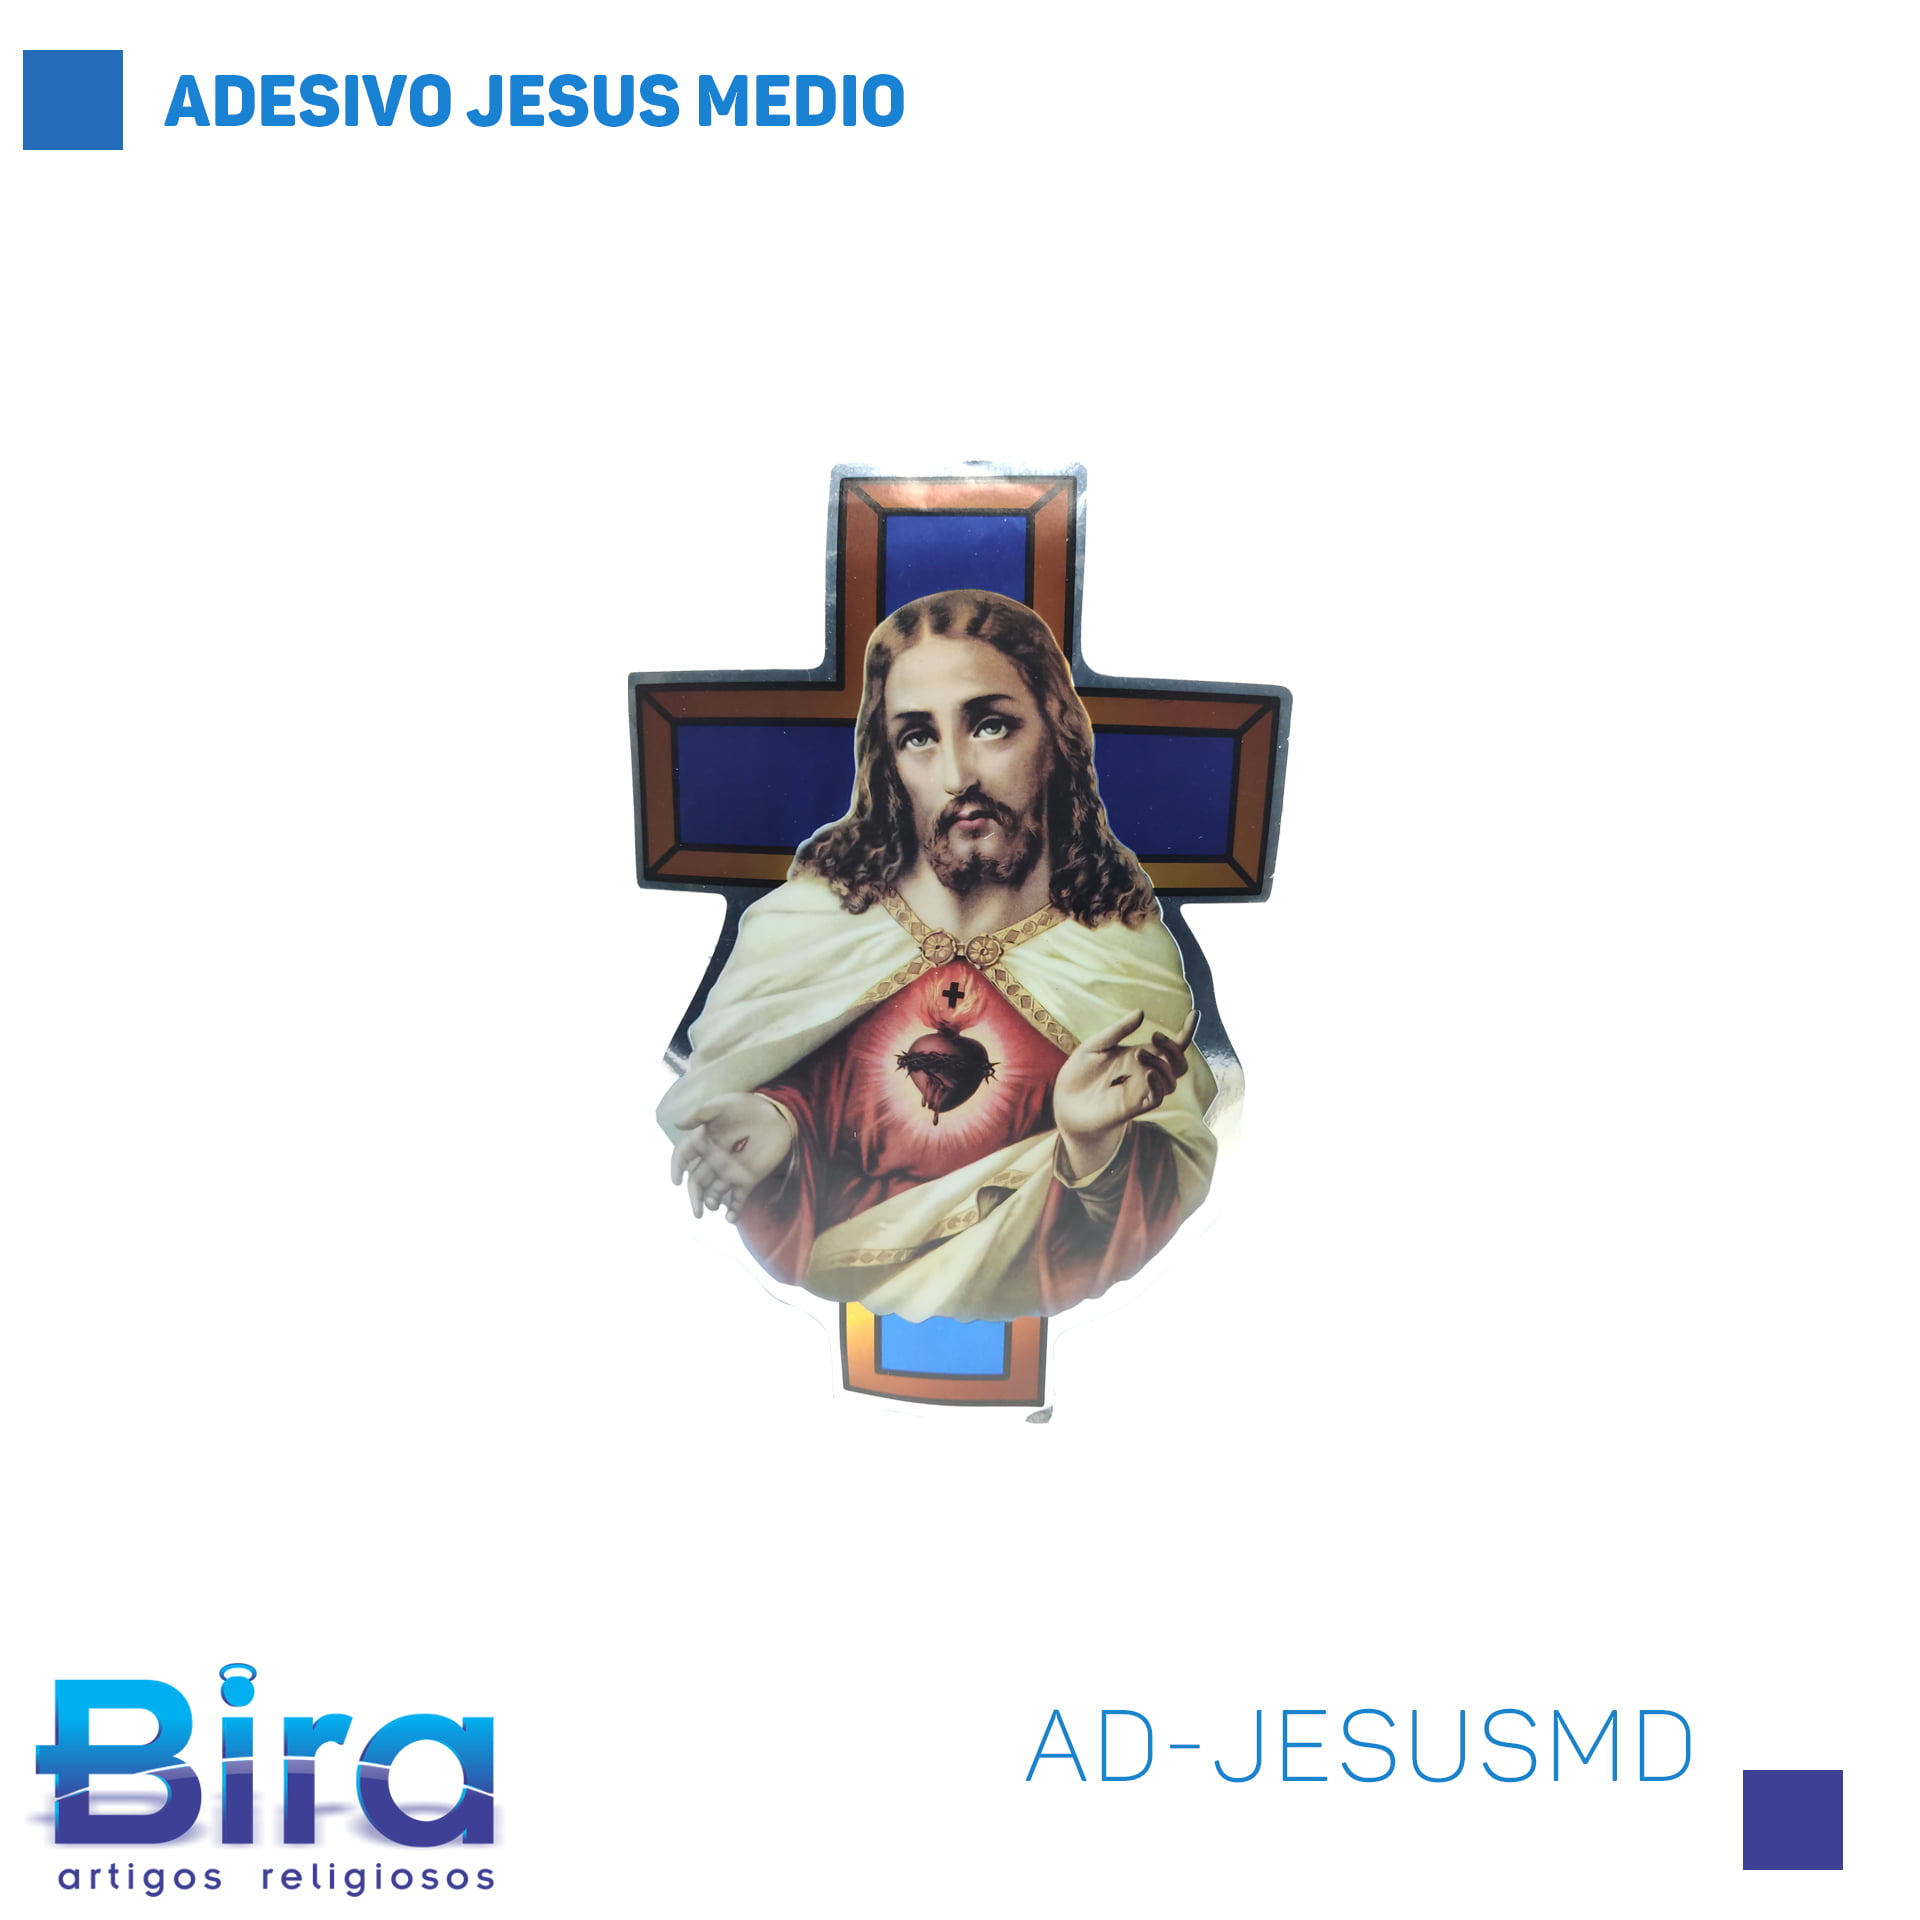 Bira Artigos Religiosos - ADESIVO JESUS MEDIO - Cód. AD-JESUSMD